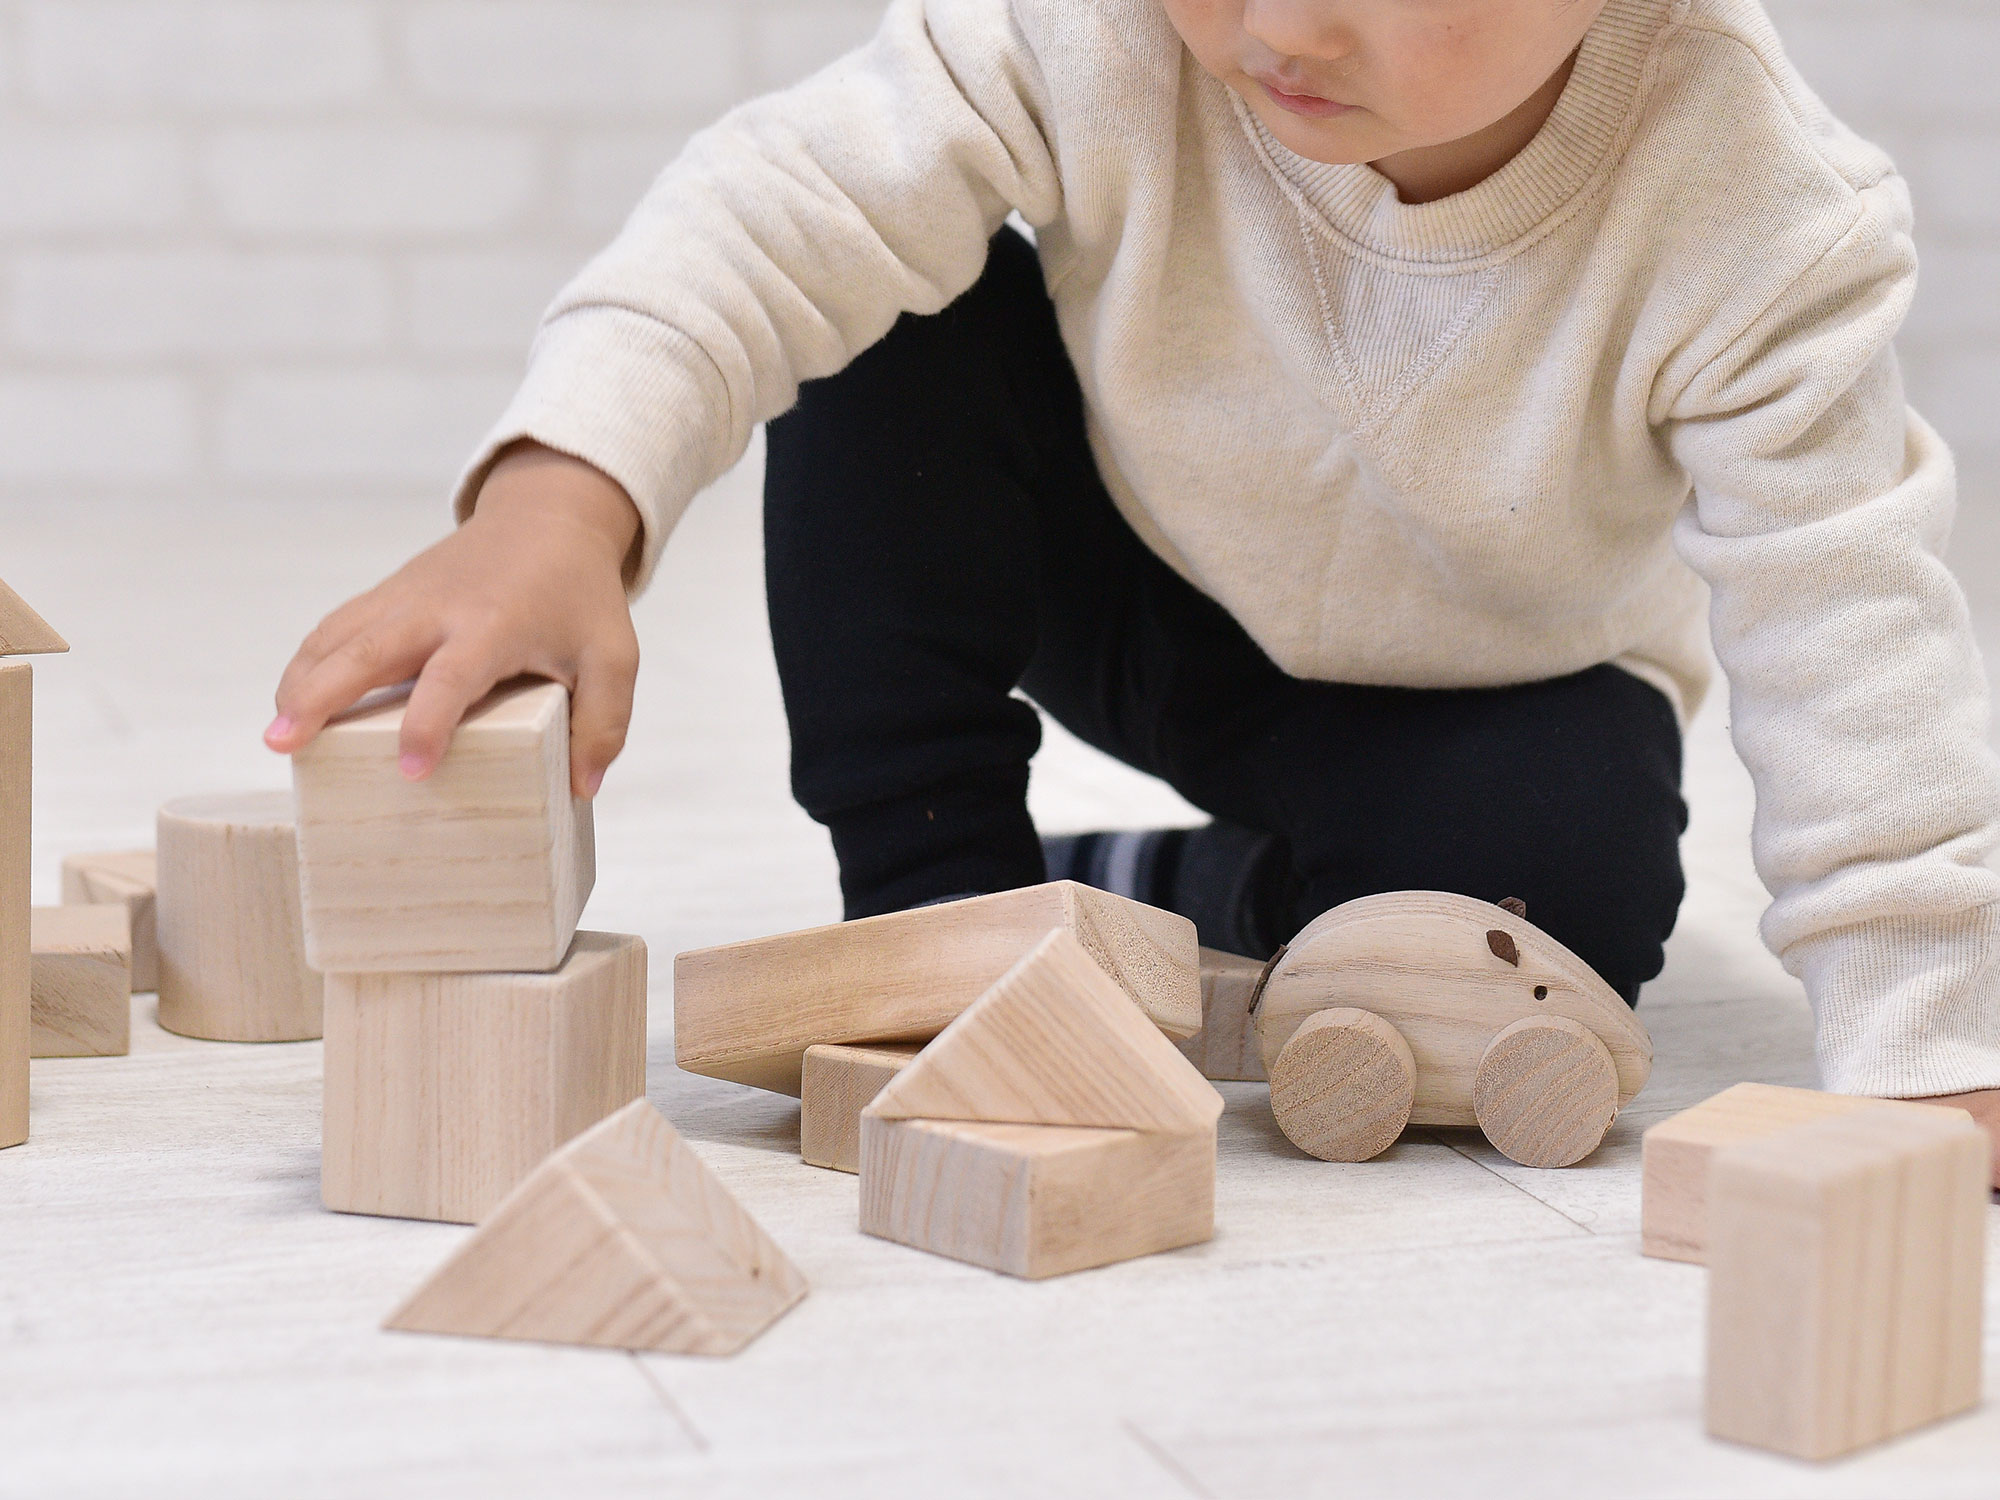 木工房MEGURO – 会津桐を使用したおもちゃなど様々な木工品を製造販売しています